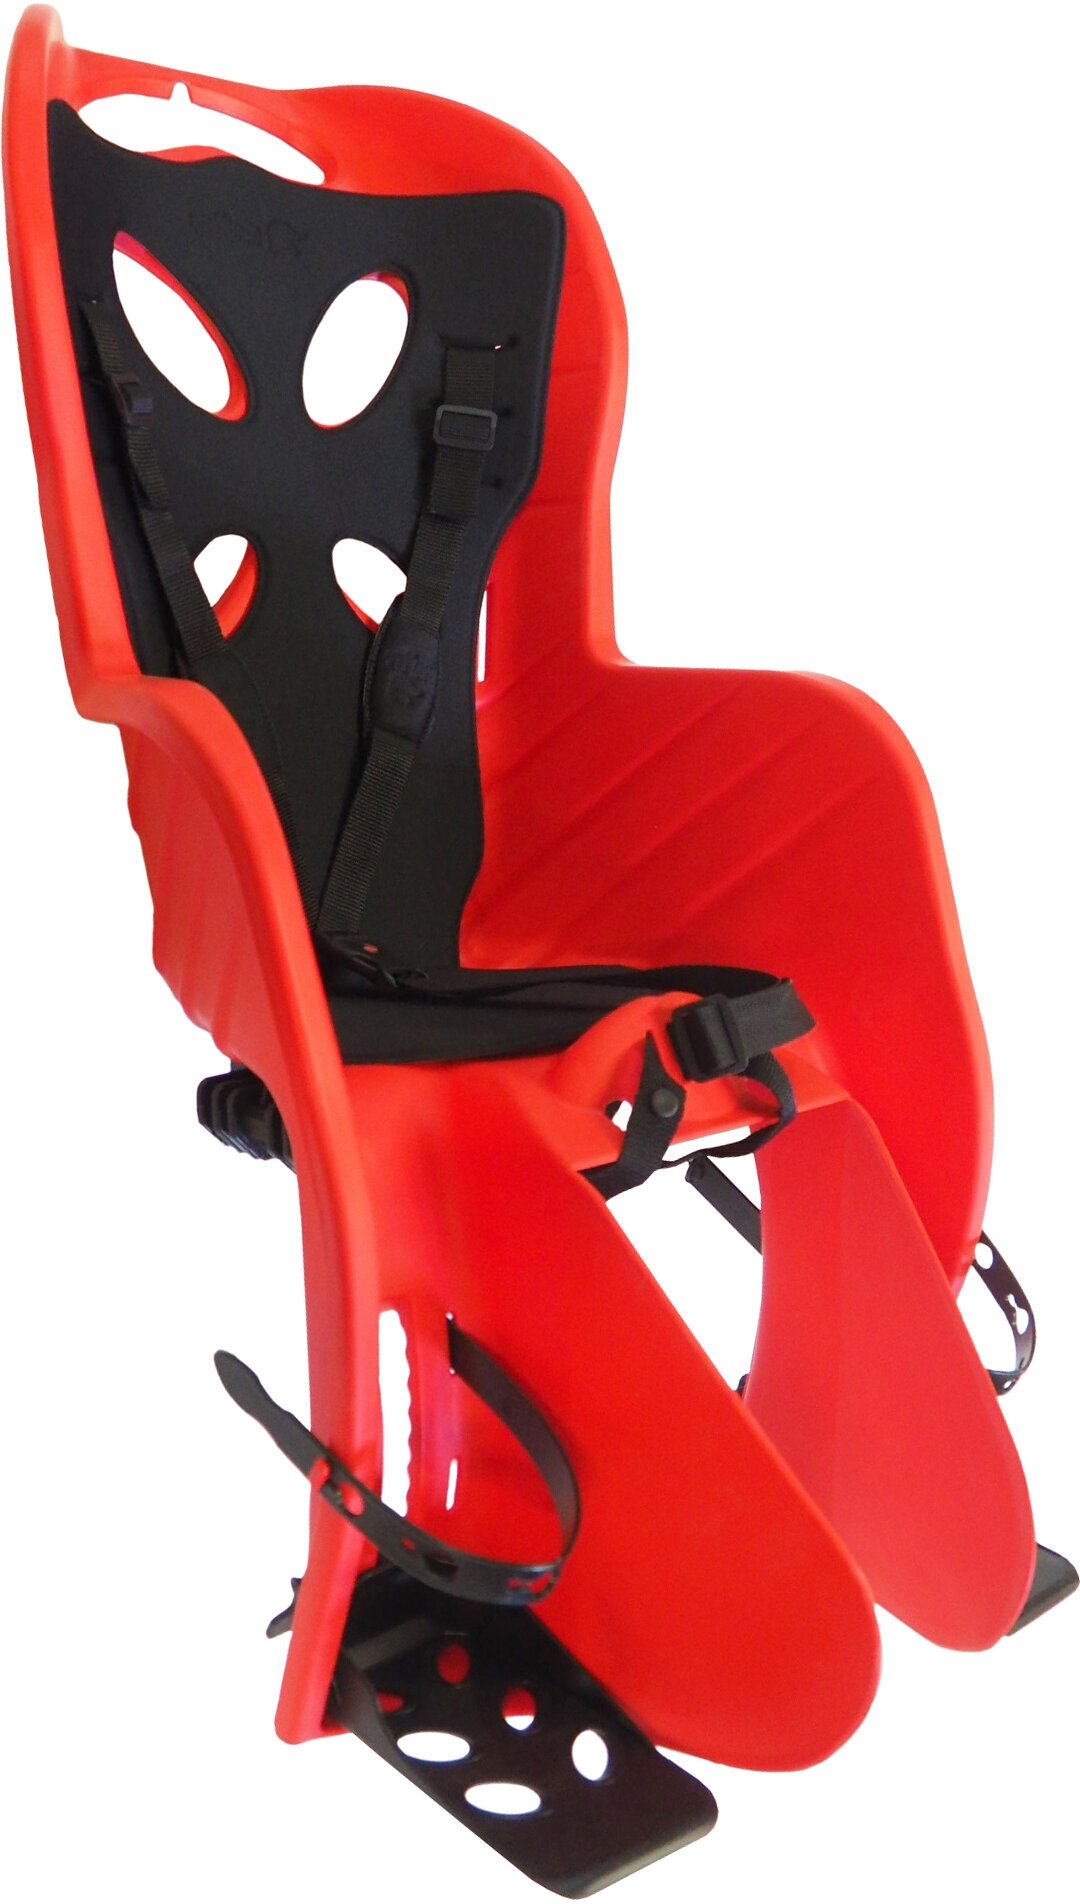 Кресло детское на подсед. штырь CURIOSO DELUXE красн с черн вставкой до 22кг 'NFUN (Италия)